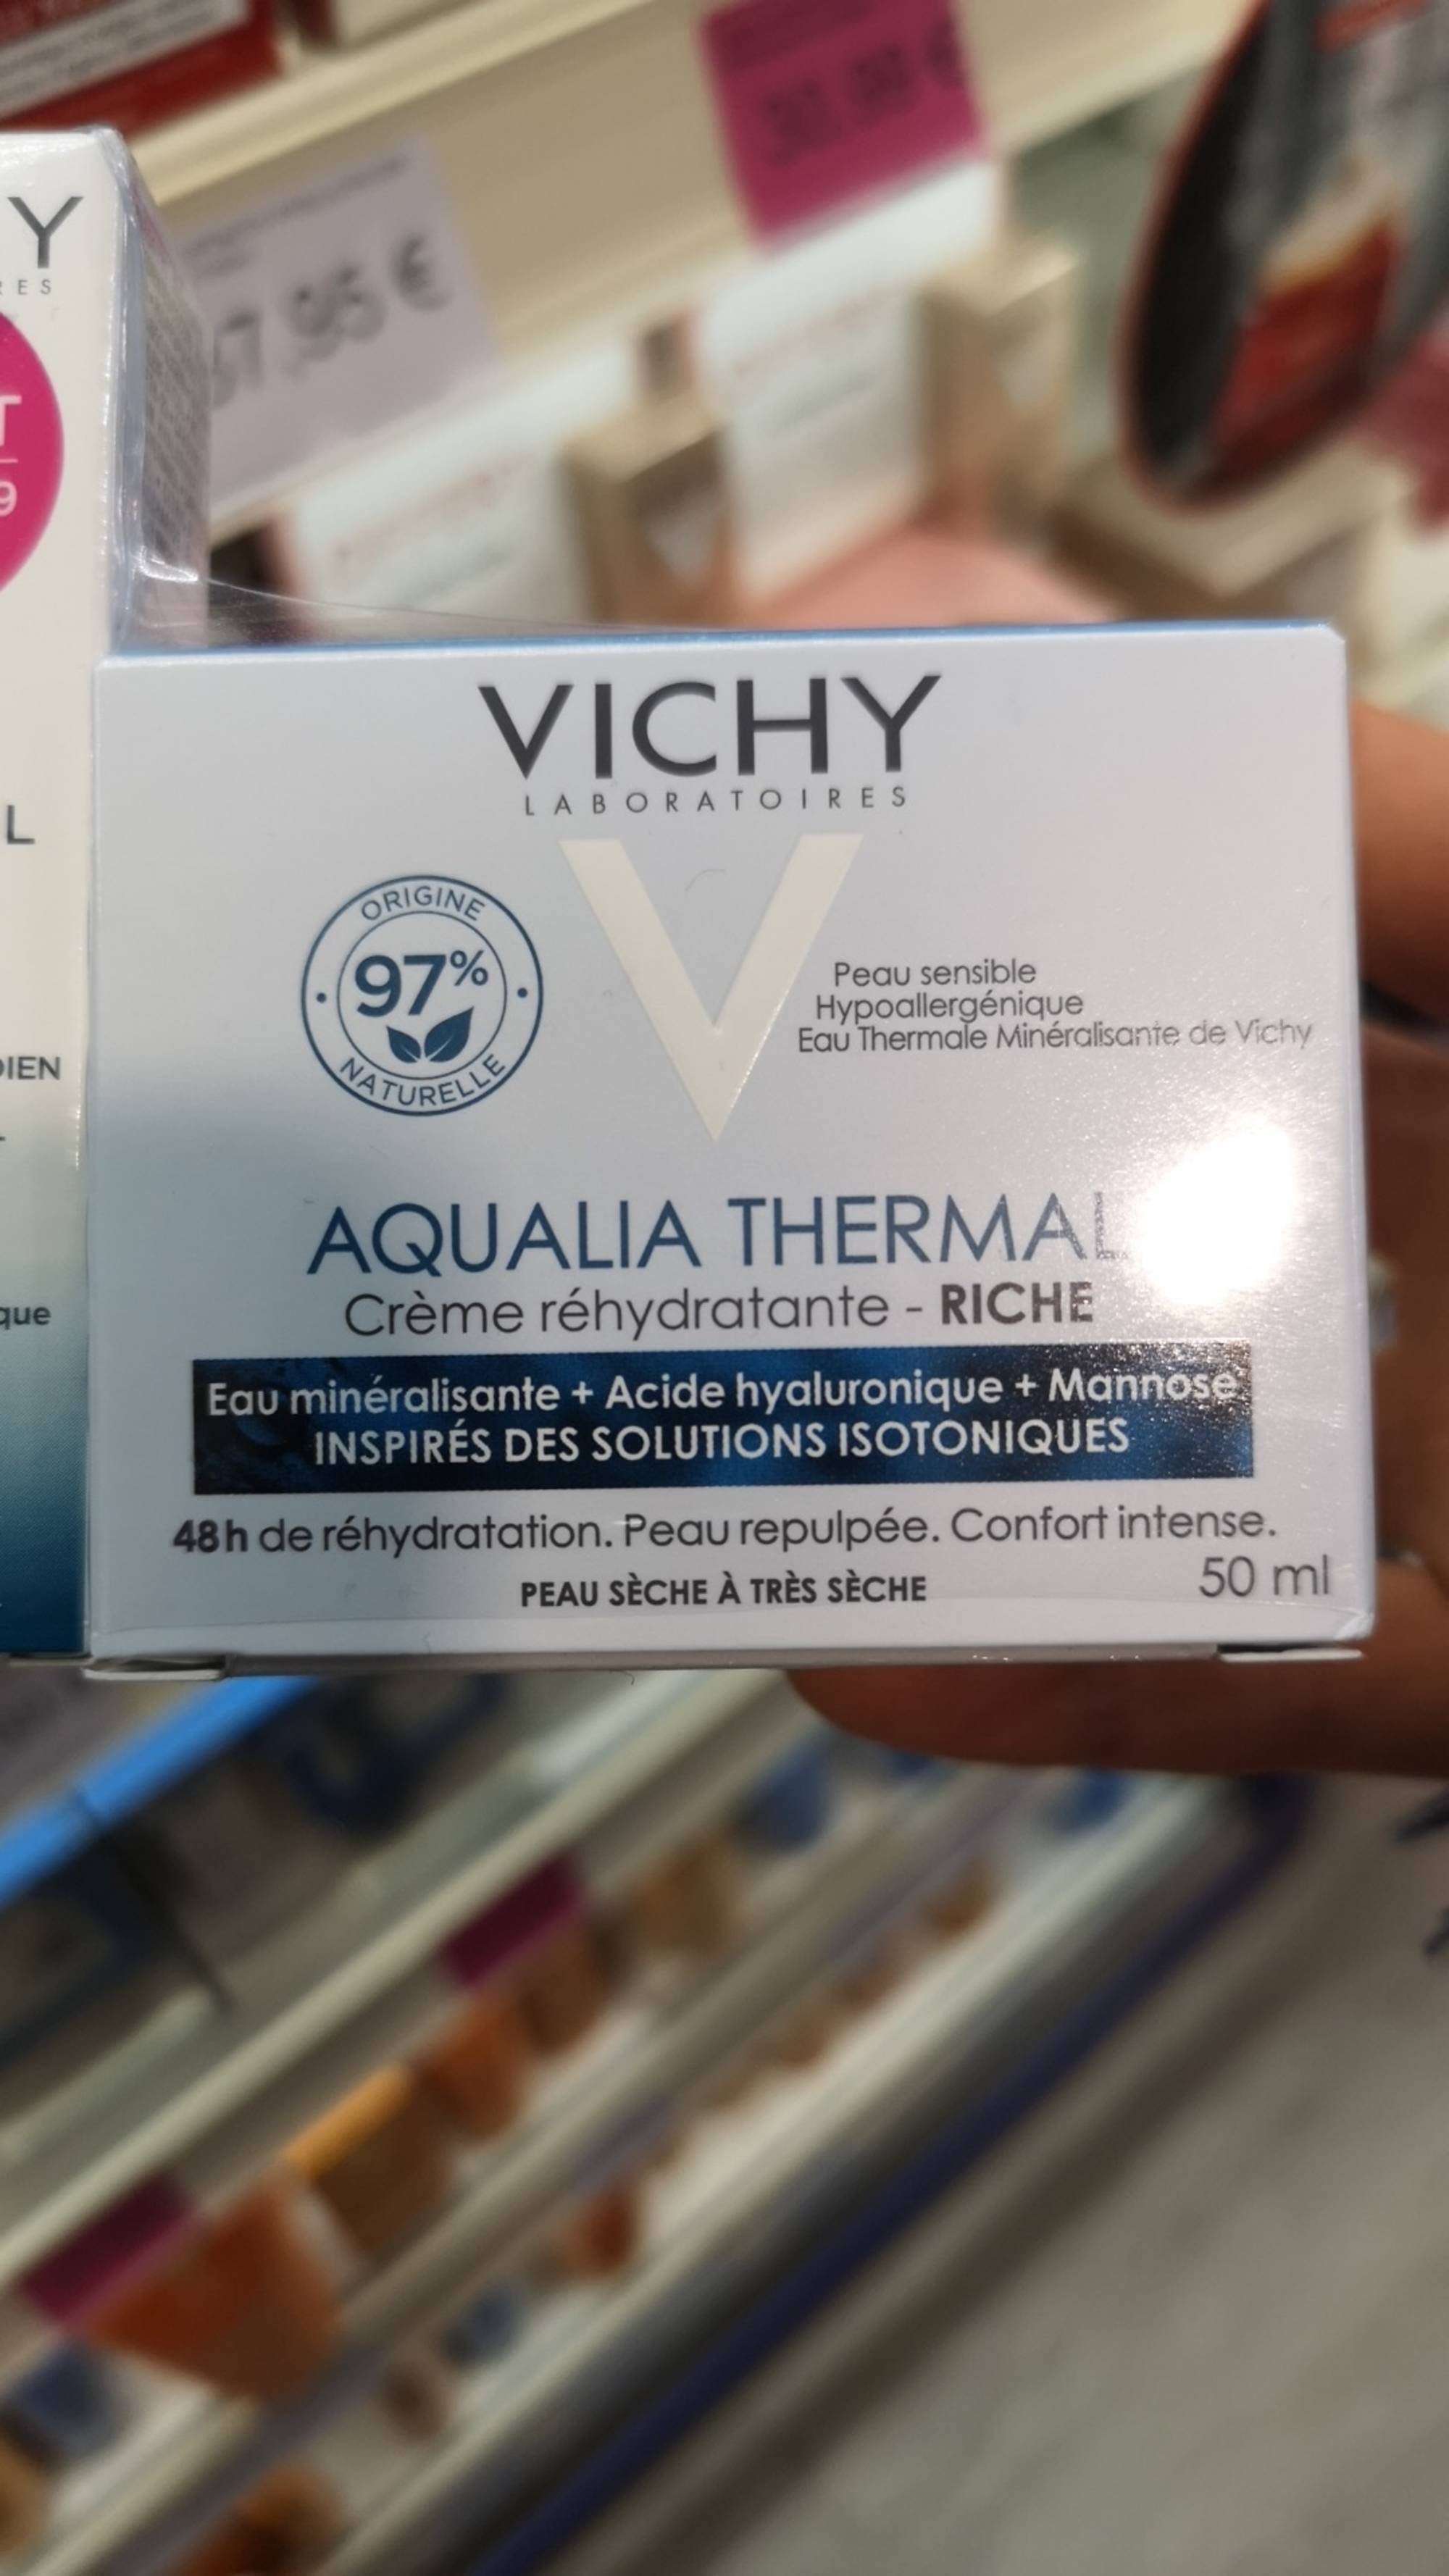 VICHY - Aqualia thermal - Crème réhydratante riche